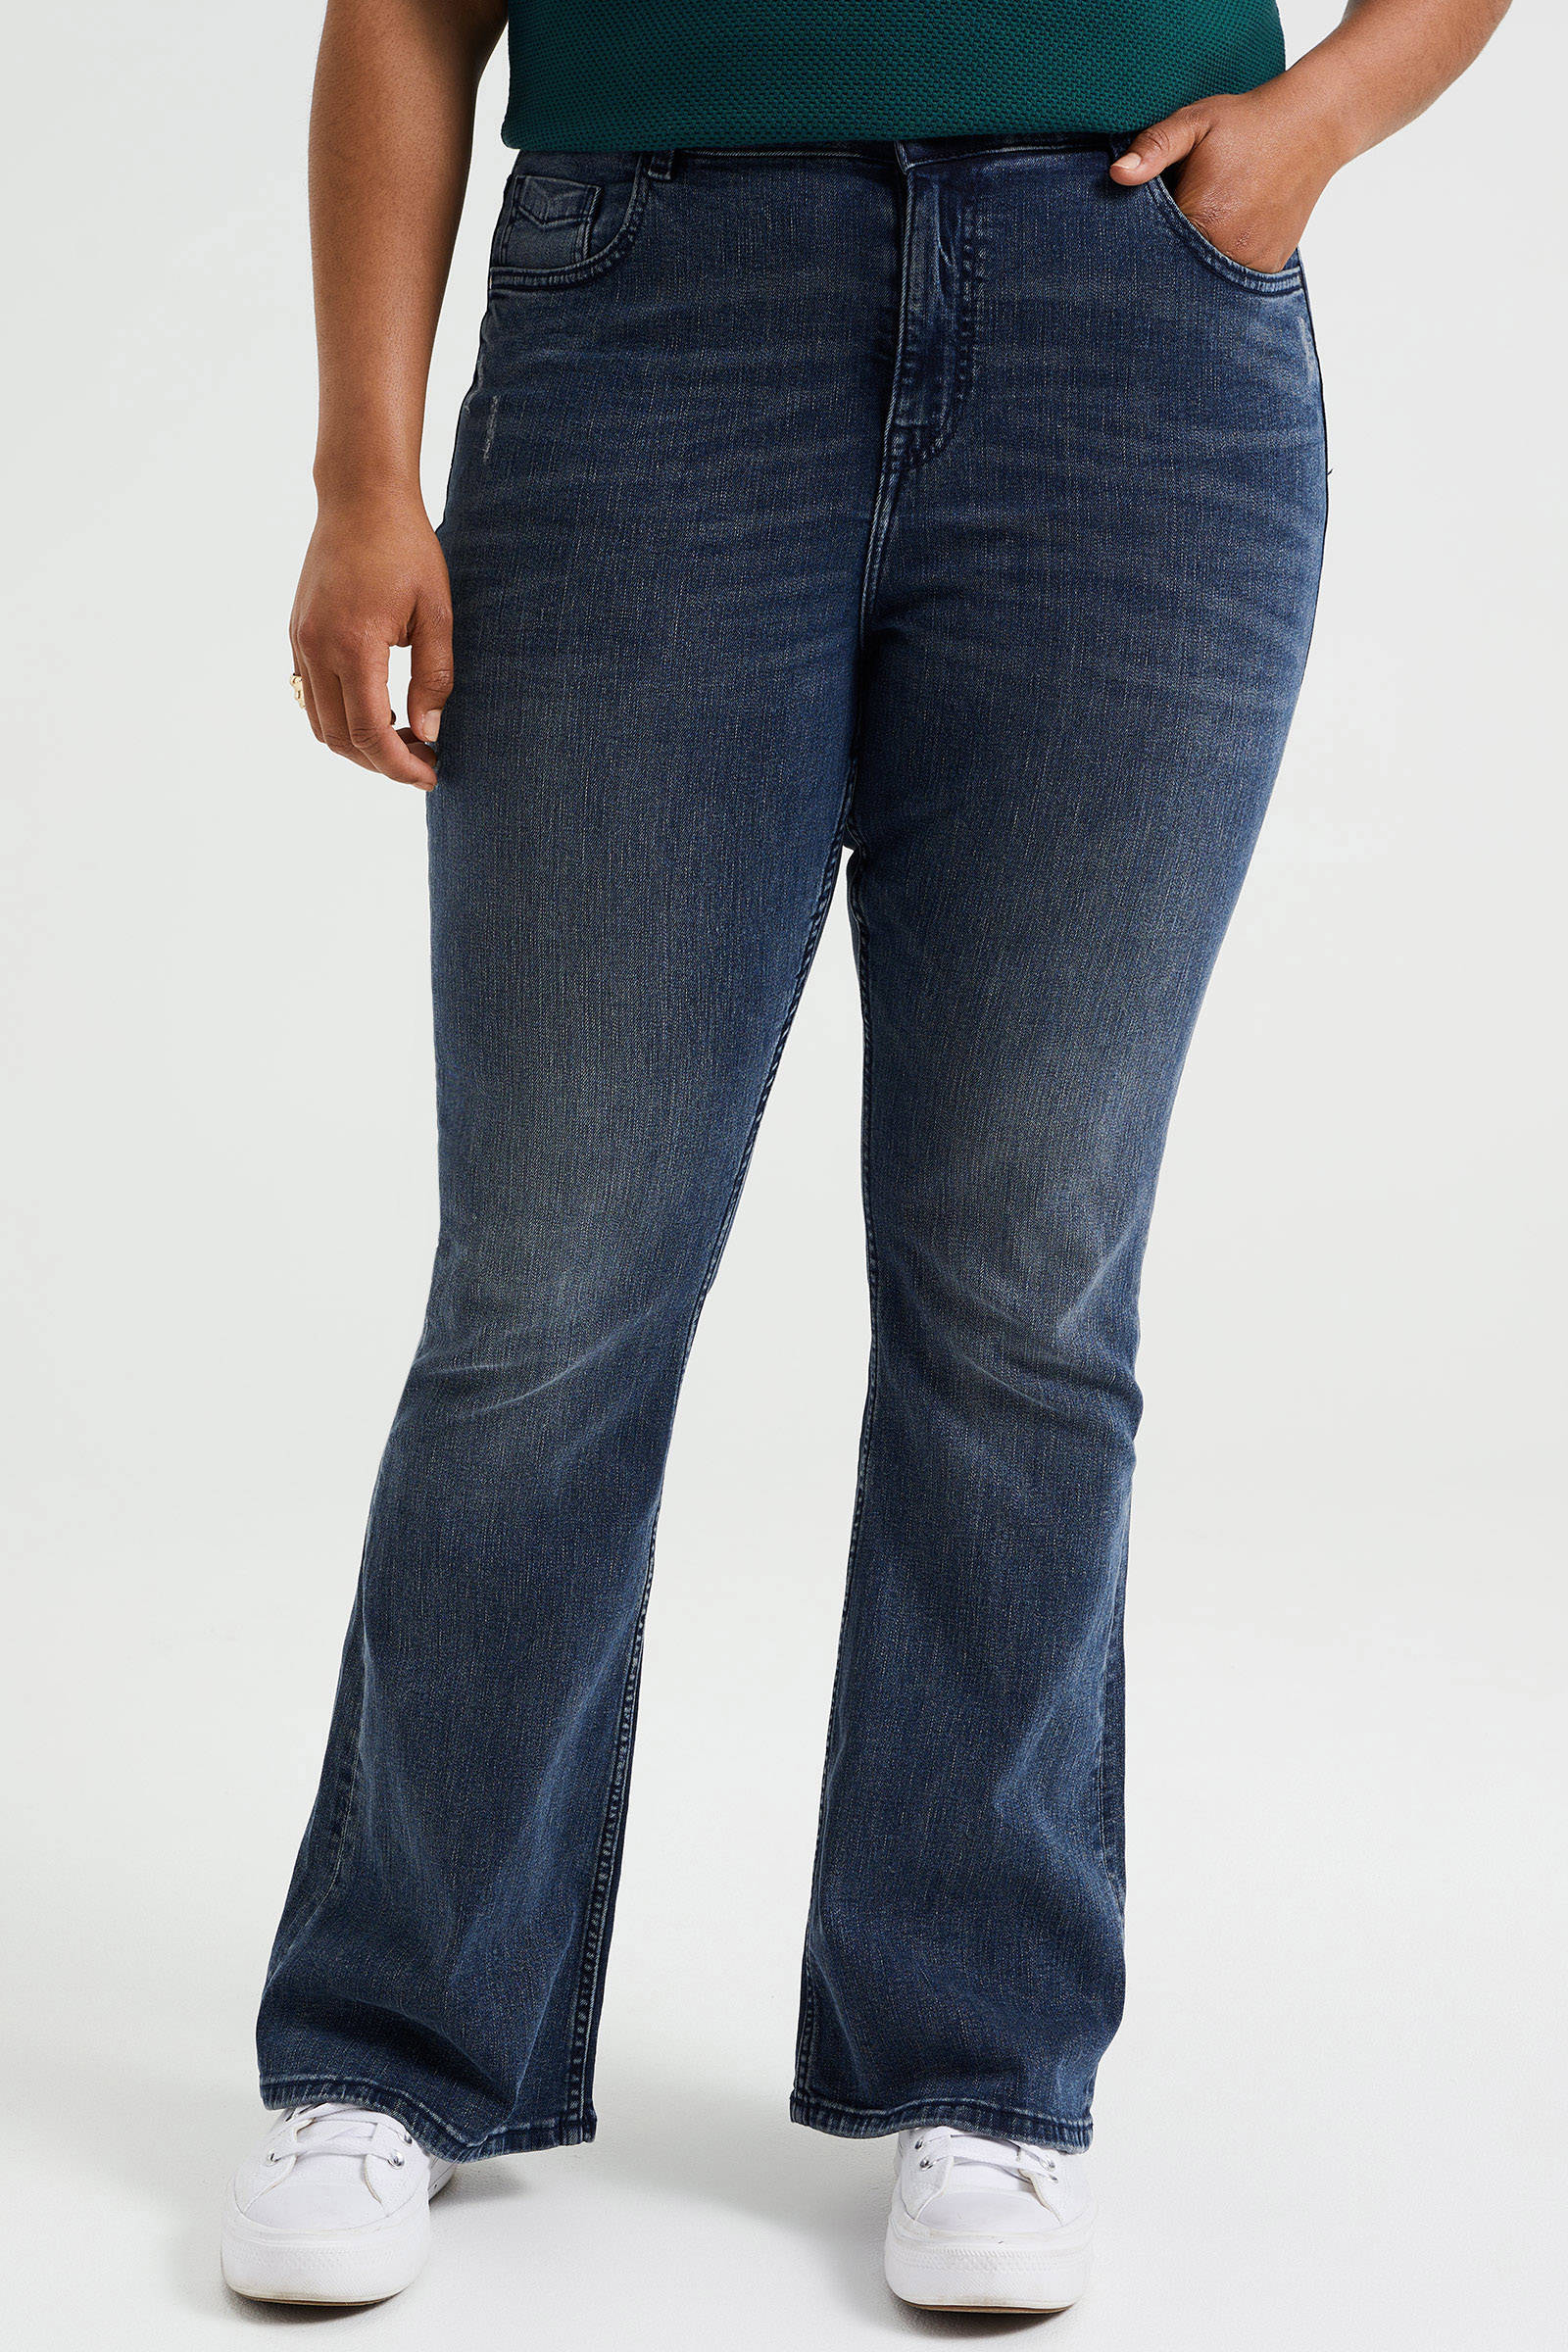 Vivienne Westwood Denim Flared Jeans in het Blauw Dames Kleding voor voor Jeans voor Flared jeans 